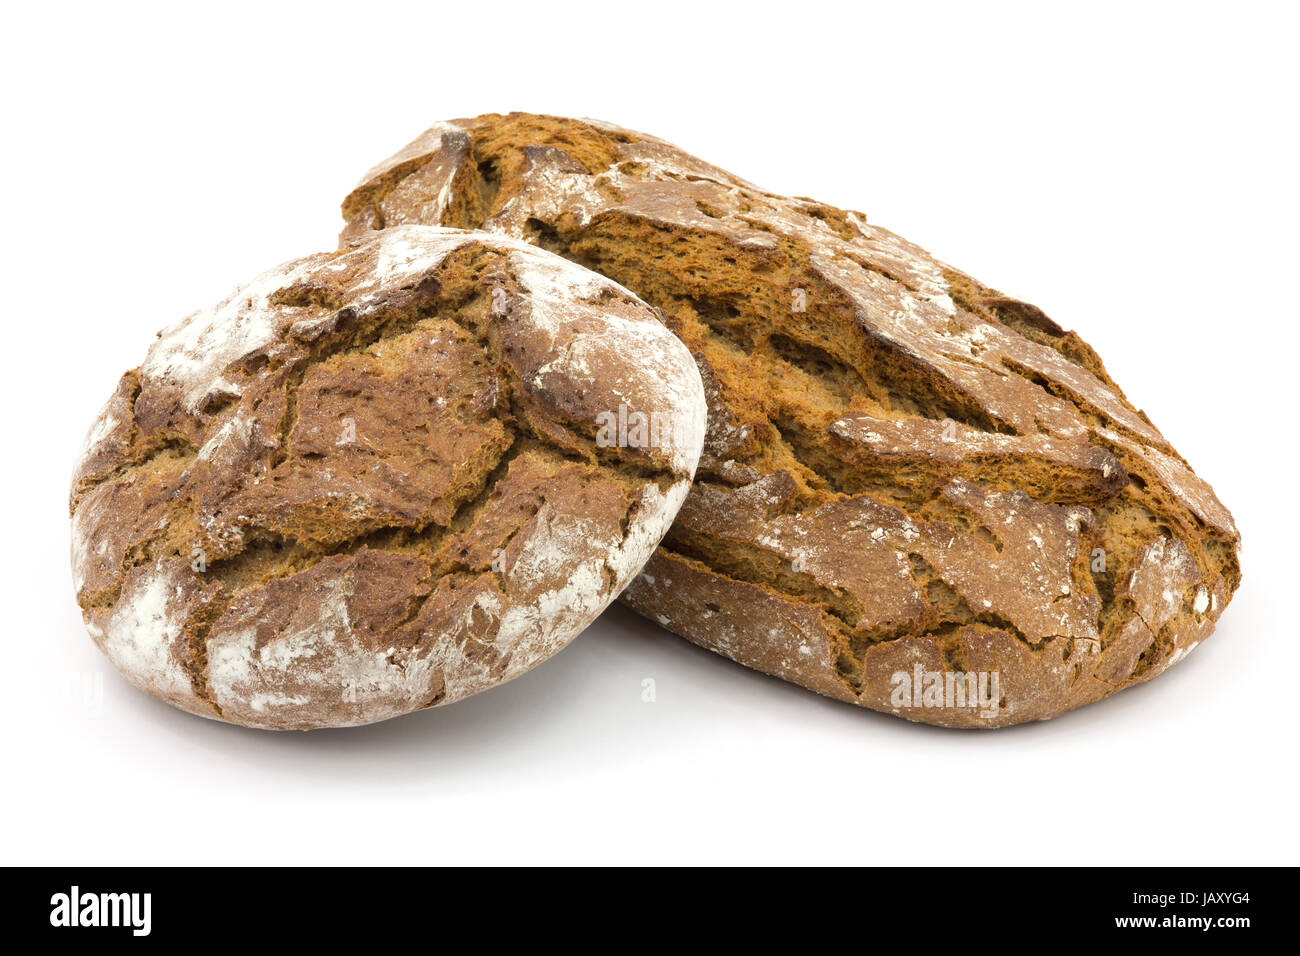 Brot, frischer knuspriger Brotlaib auf weissem Hintergrund Foto Stock